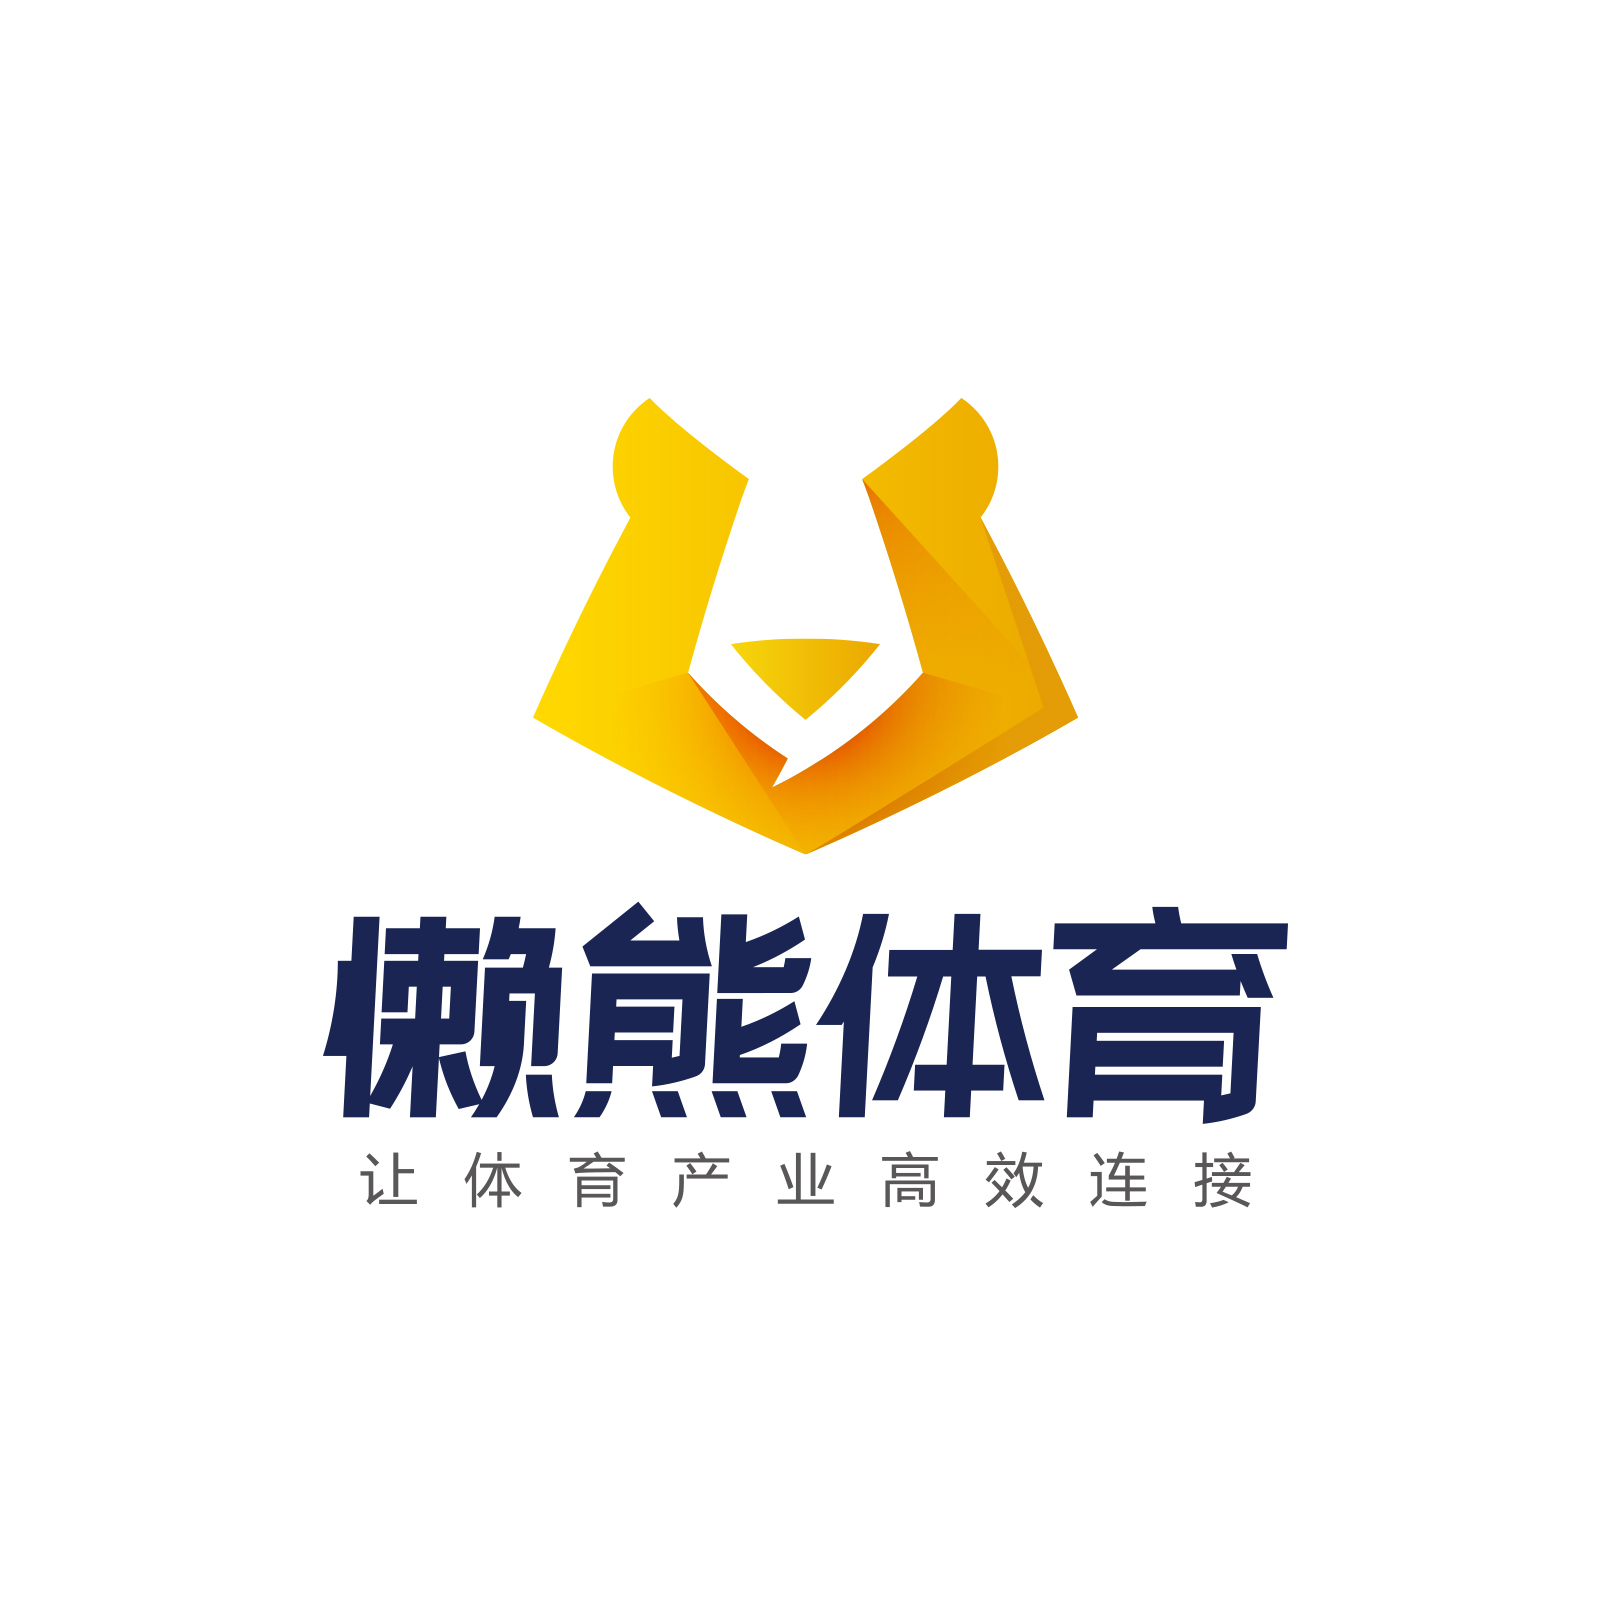 懶熊體育新Logo